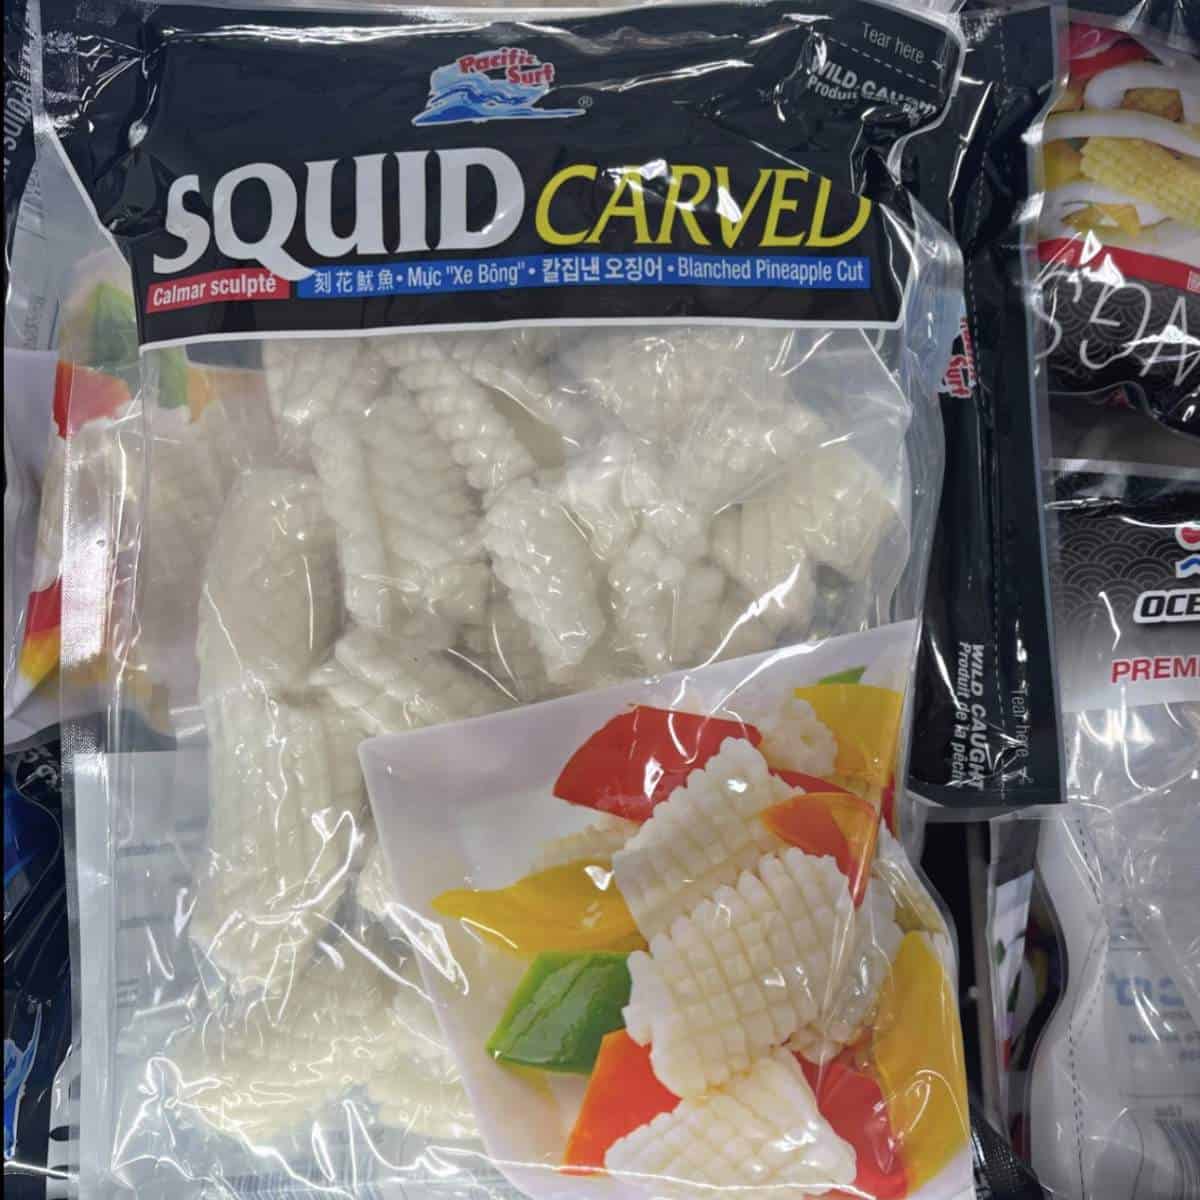 Frozen squid in package.